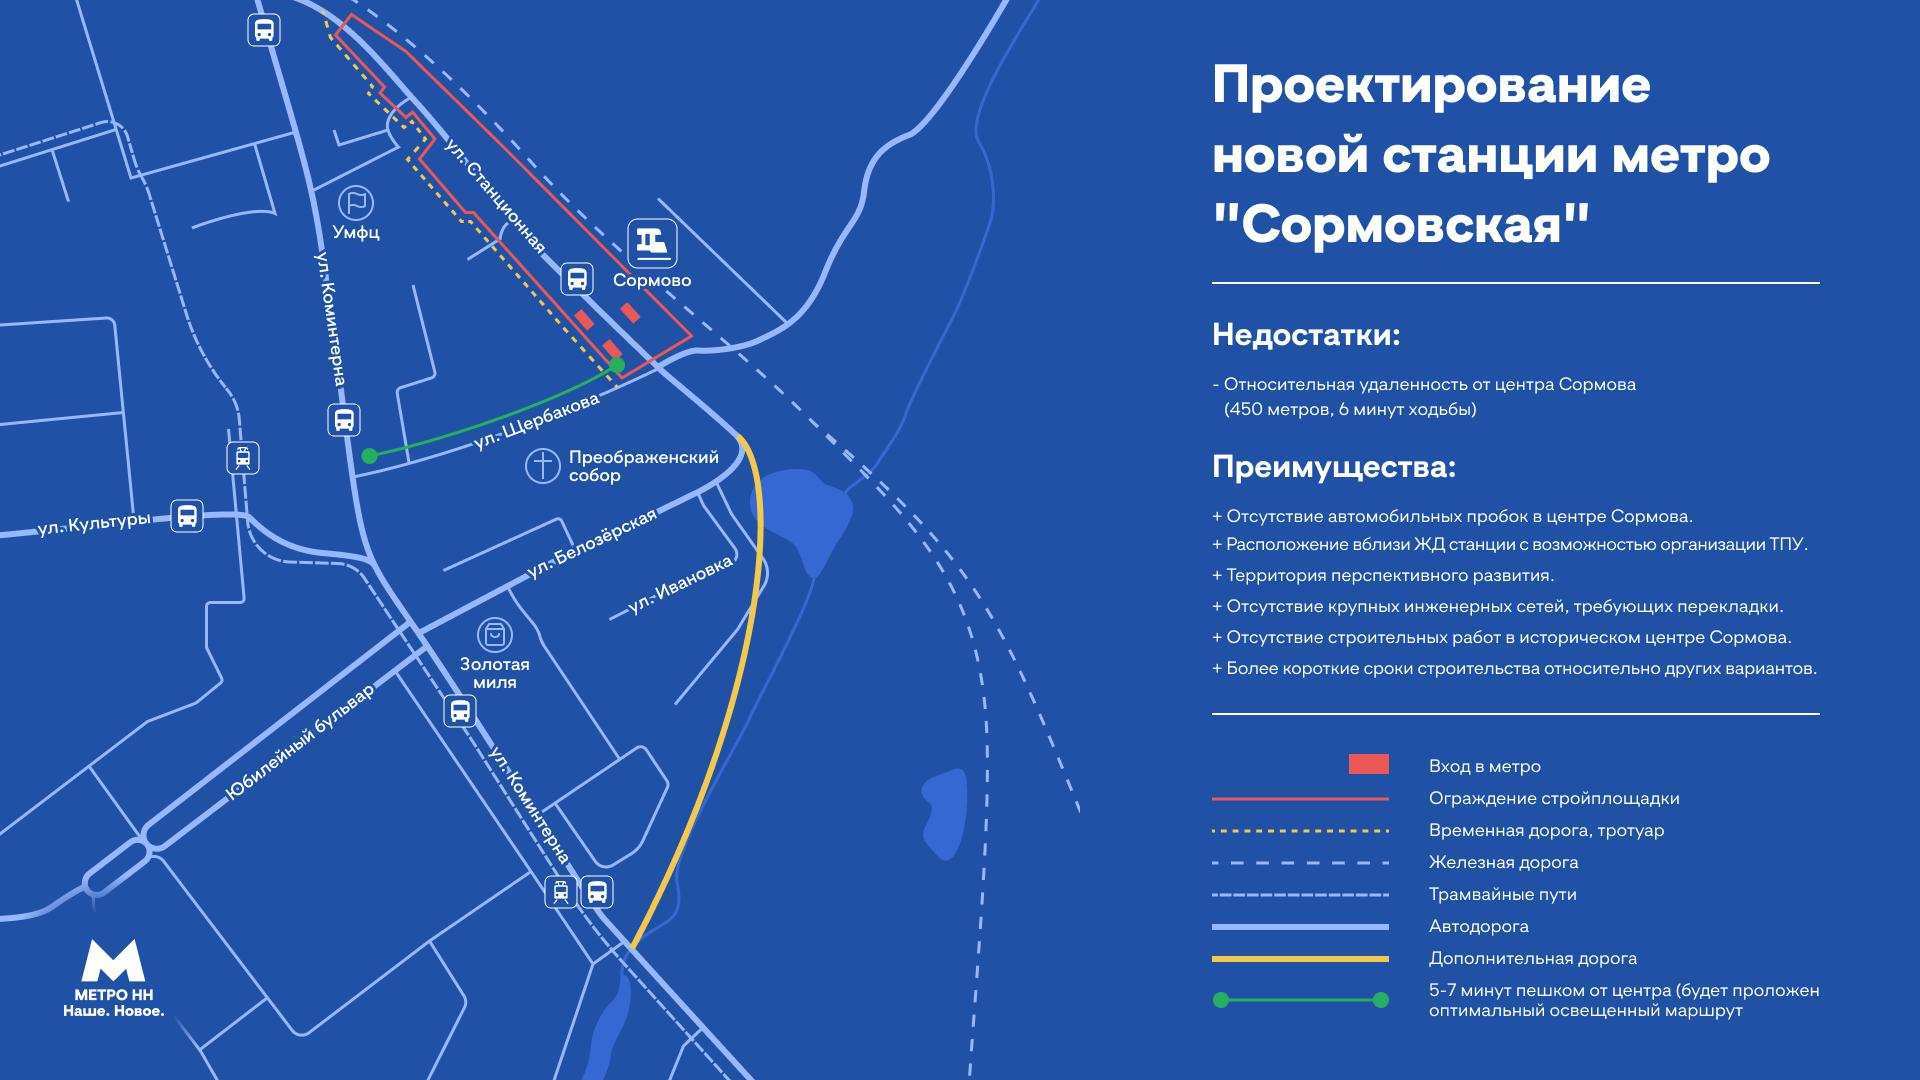 Еще три предприятия в Сормове поддержали строительство метро на Станционной - фото 1